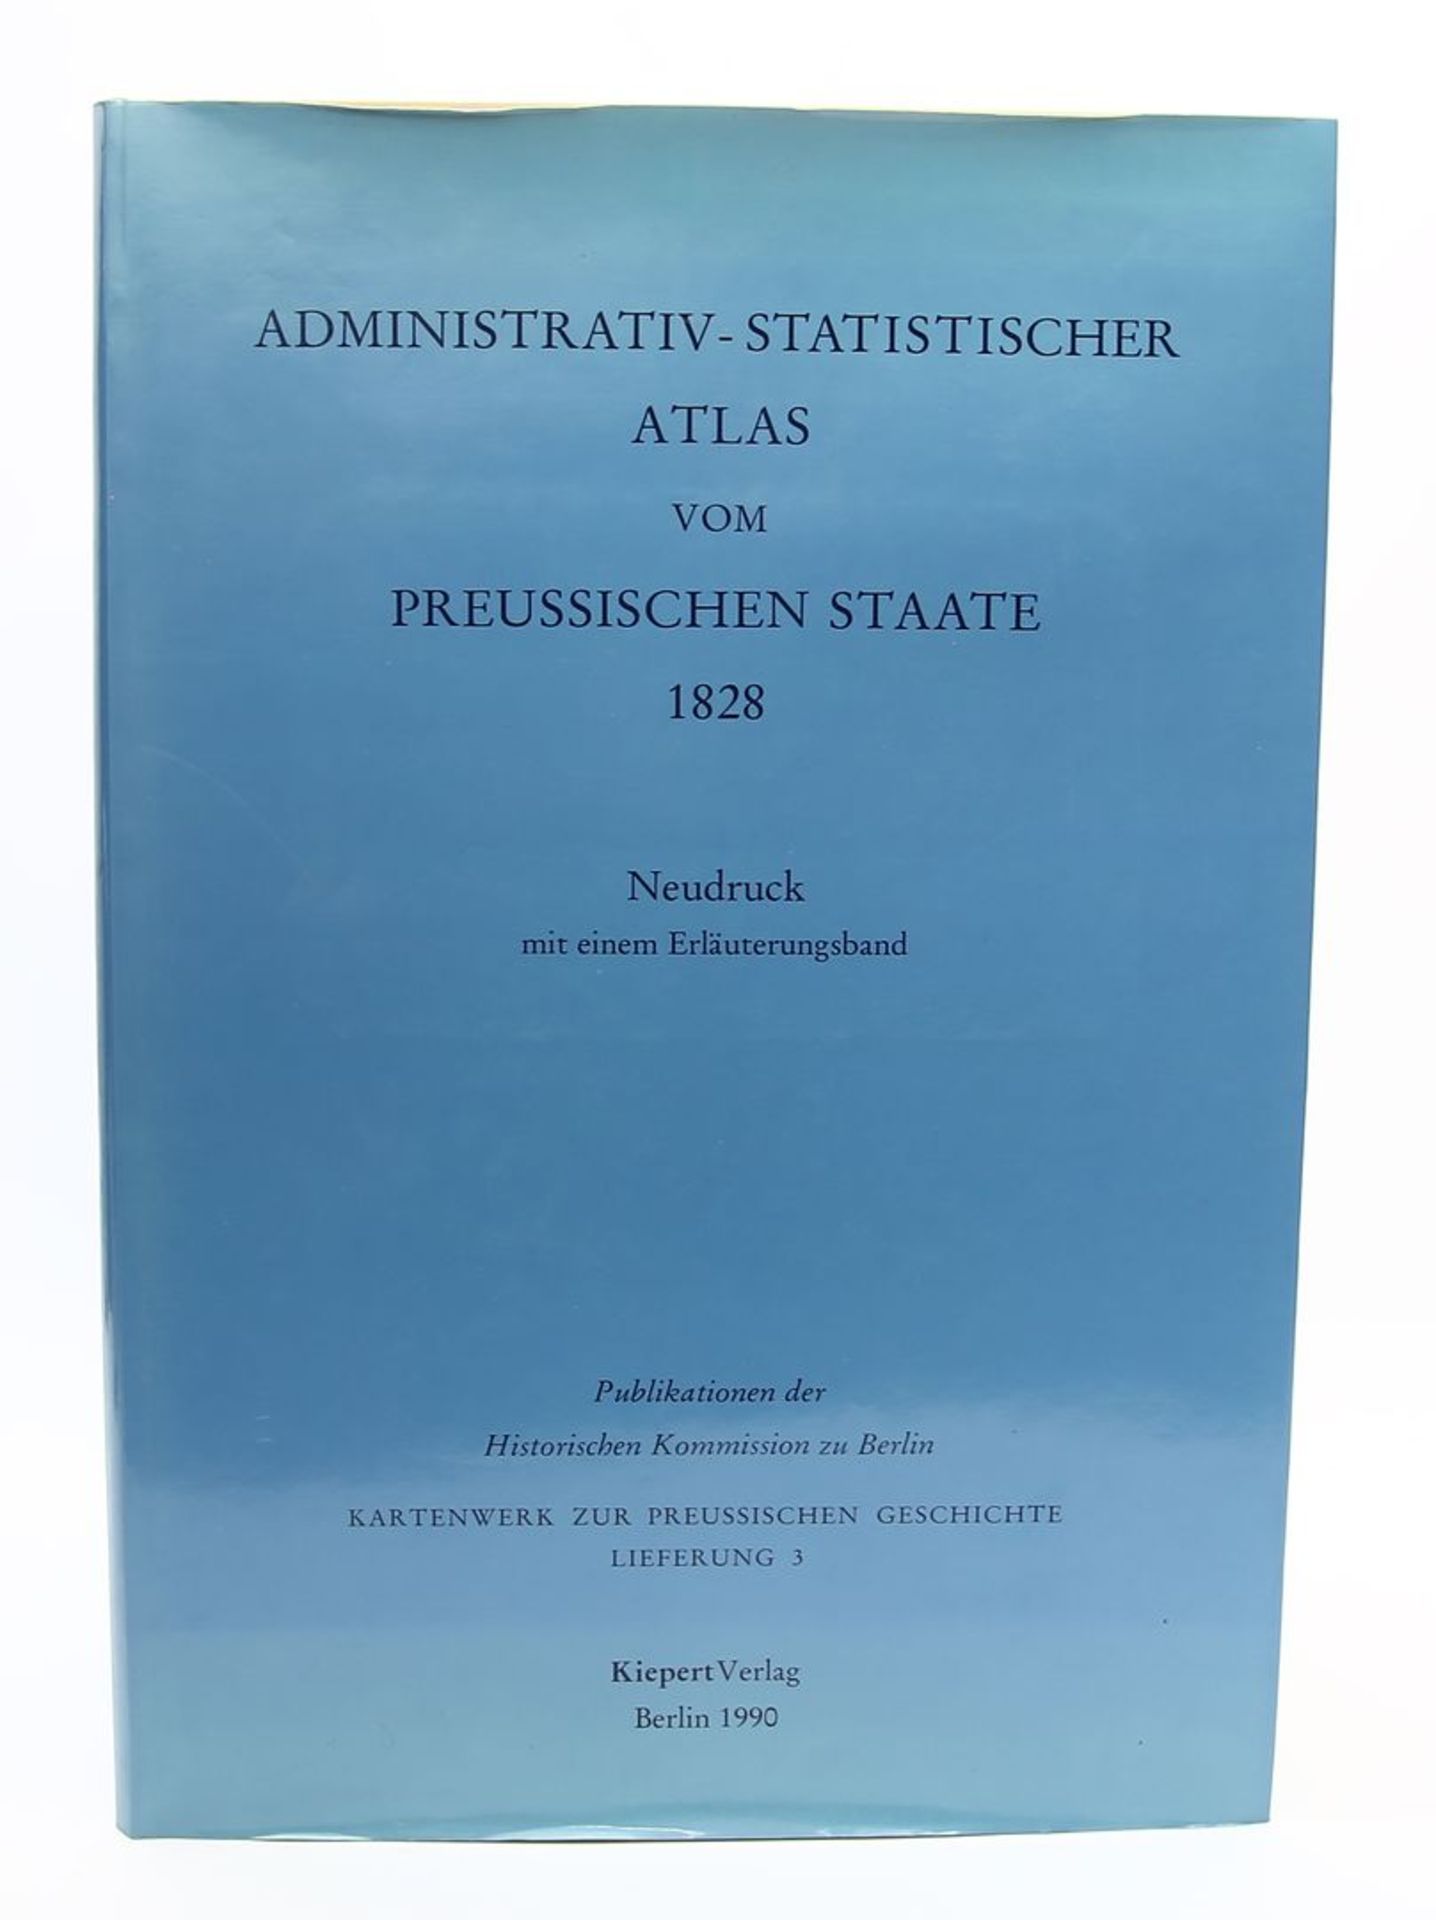 Administrativer statistischer Atlas des Preußischen Staates von 1828. - Image 2 of 2